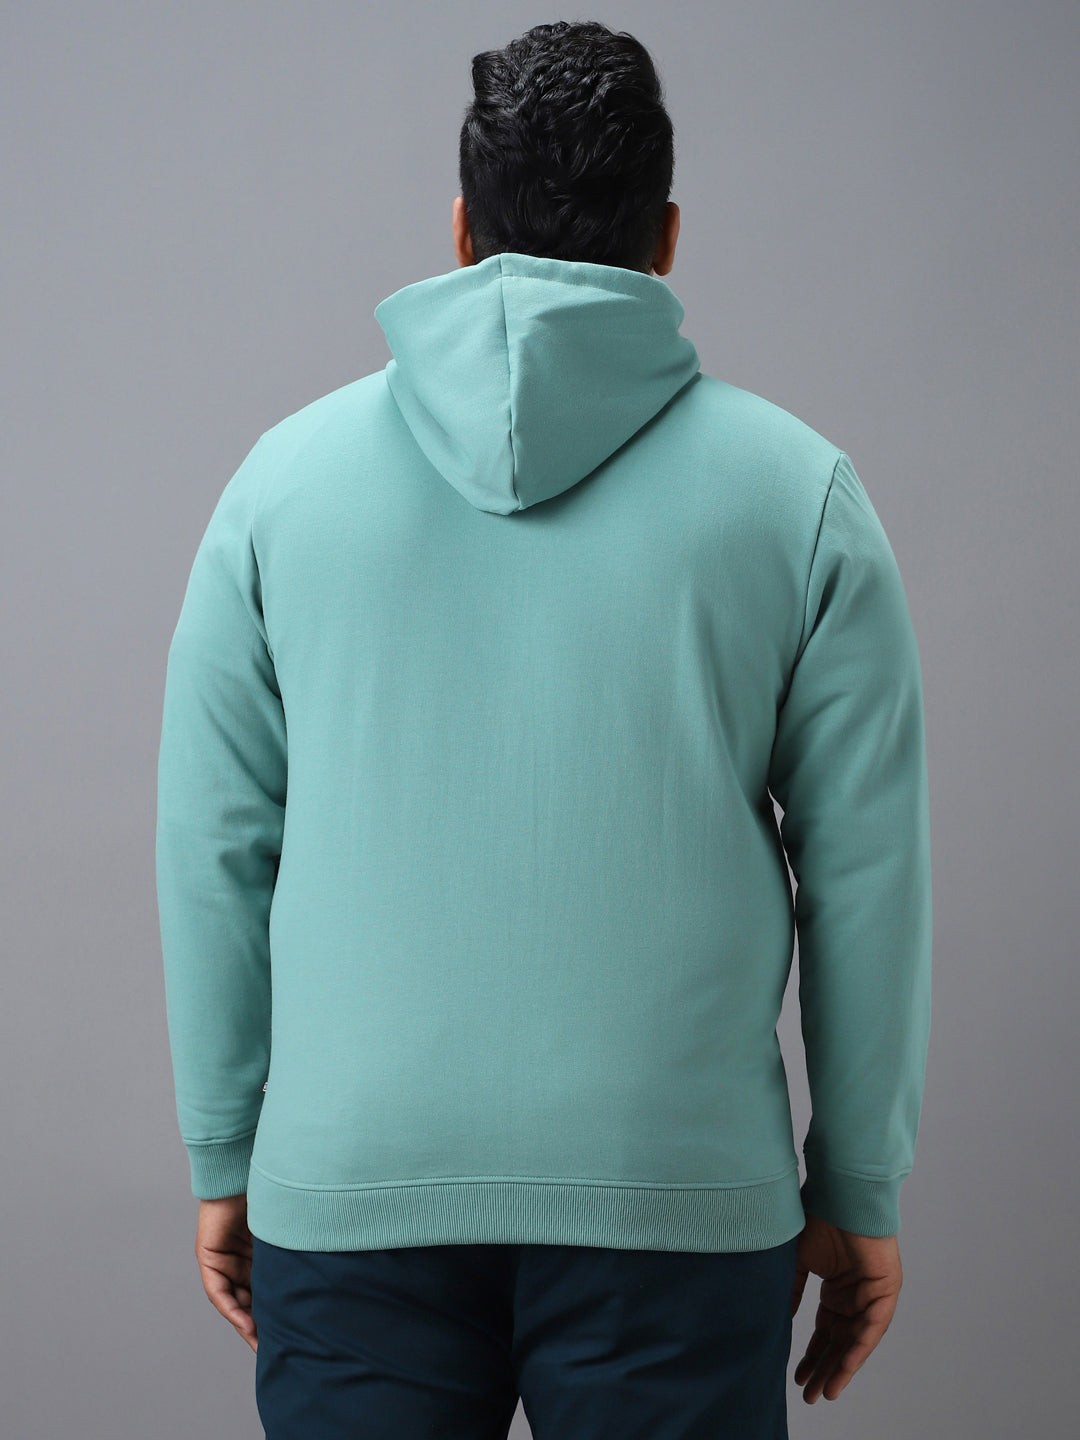 Plus Men's Green Cotton Solid Zippered Hooded Neck Sweatshirt